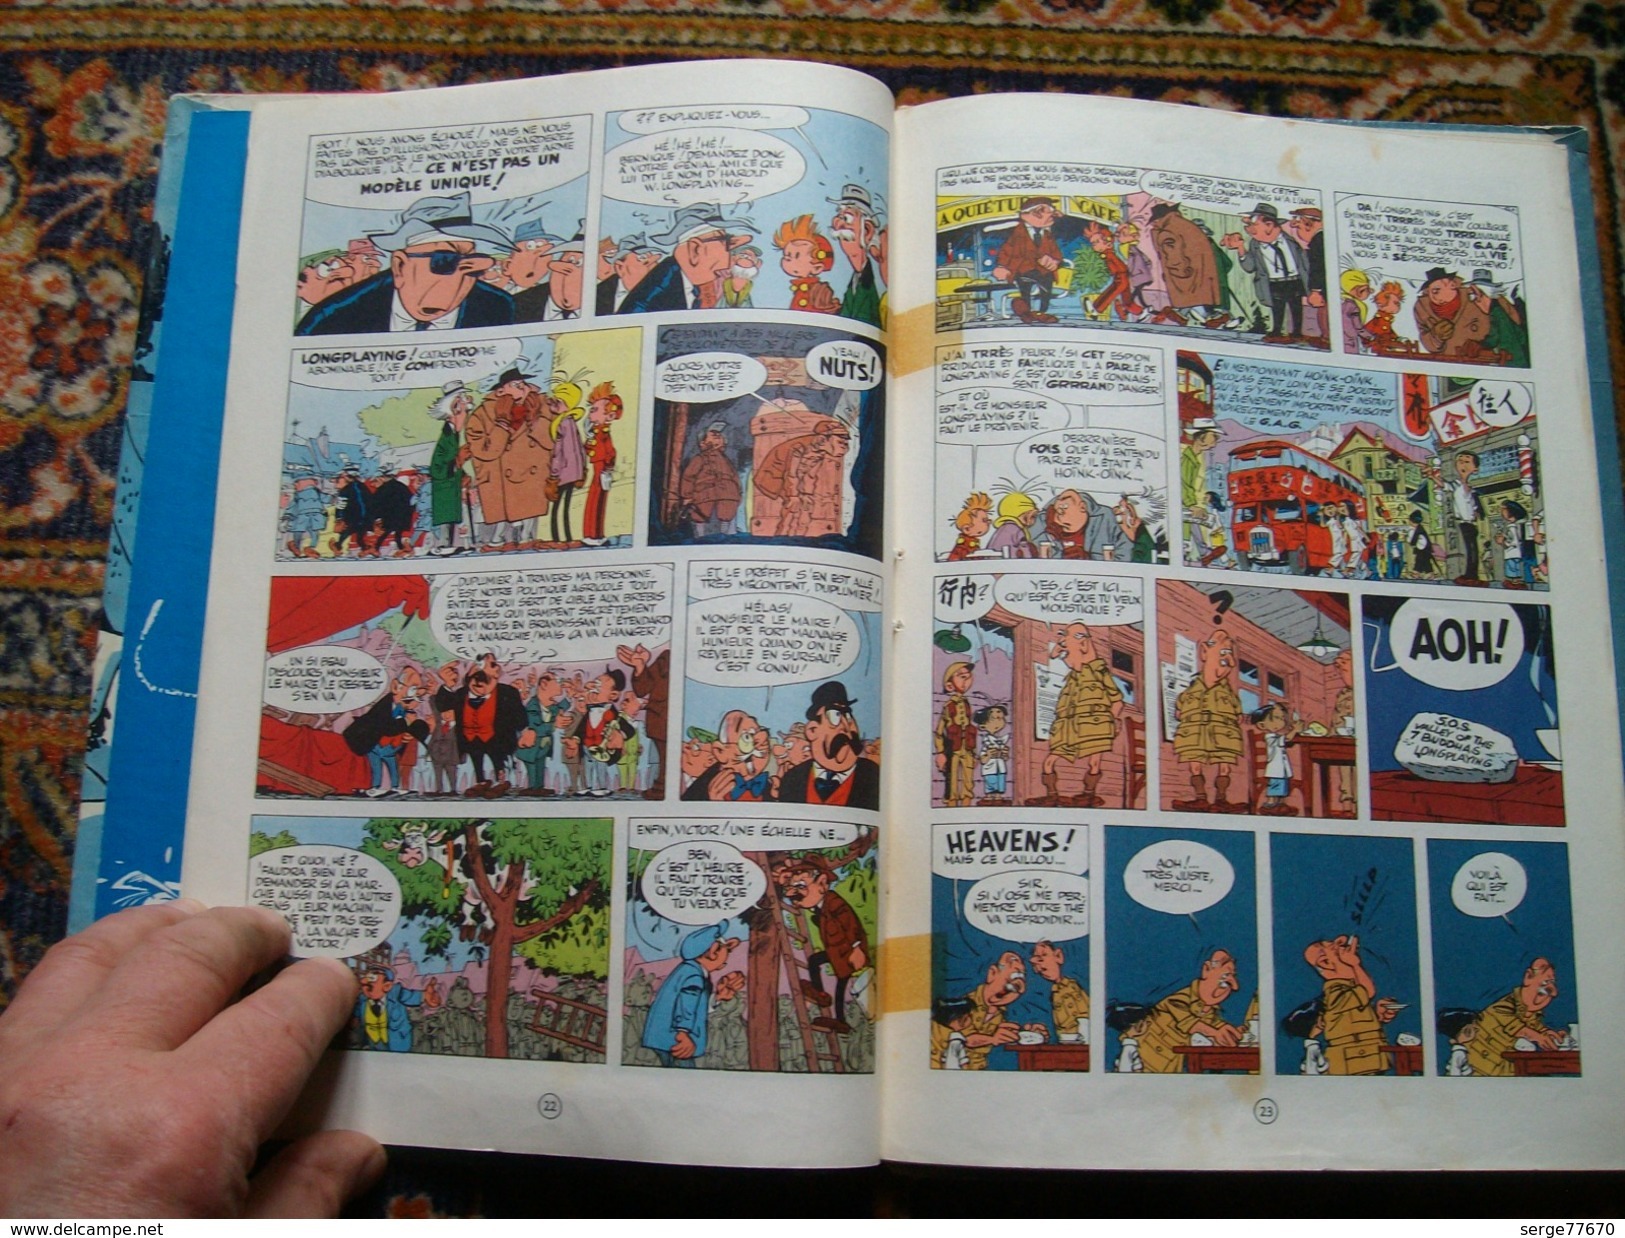 Spirou et Fantasio Franquin Le prisonnier du Bouddha 1960 édition originale eo Dupuis